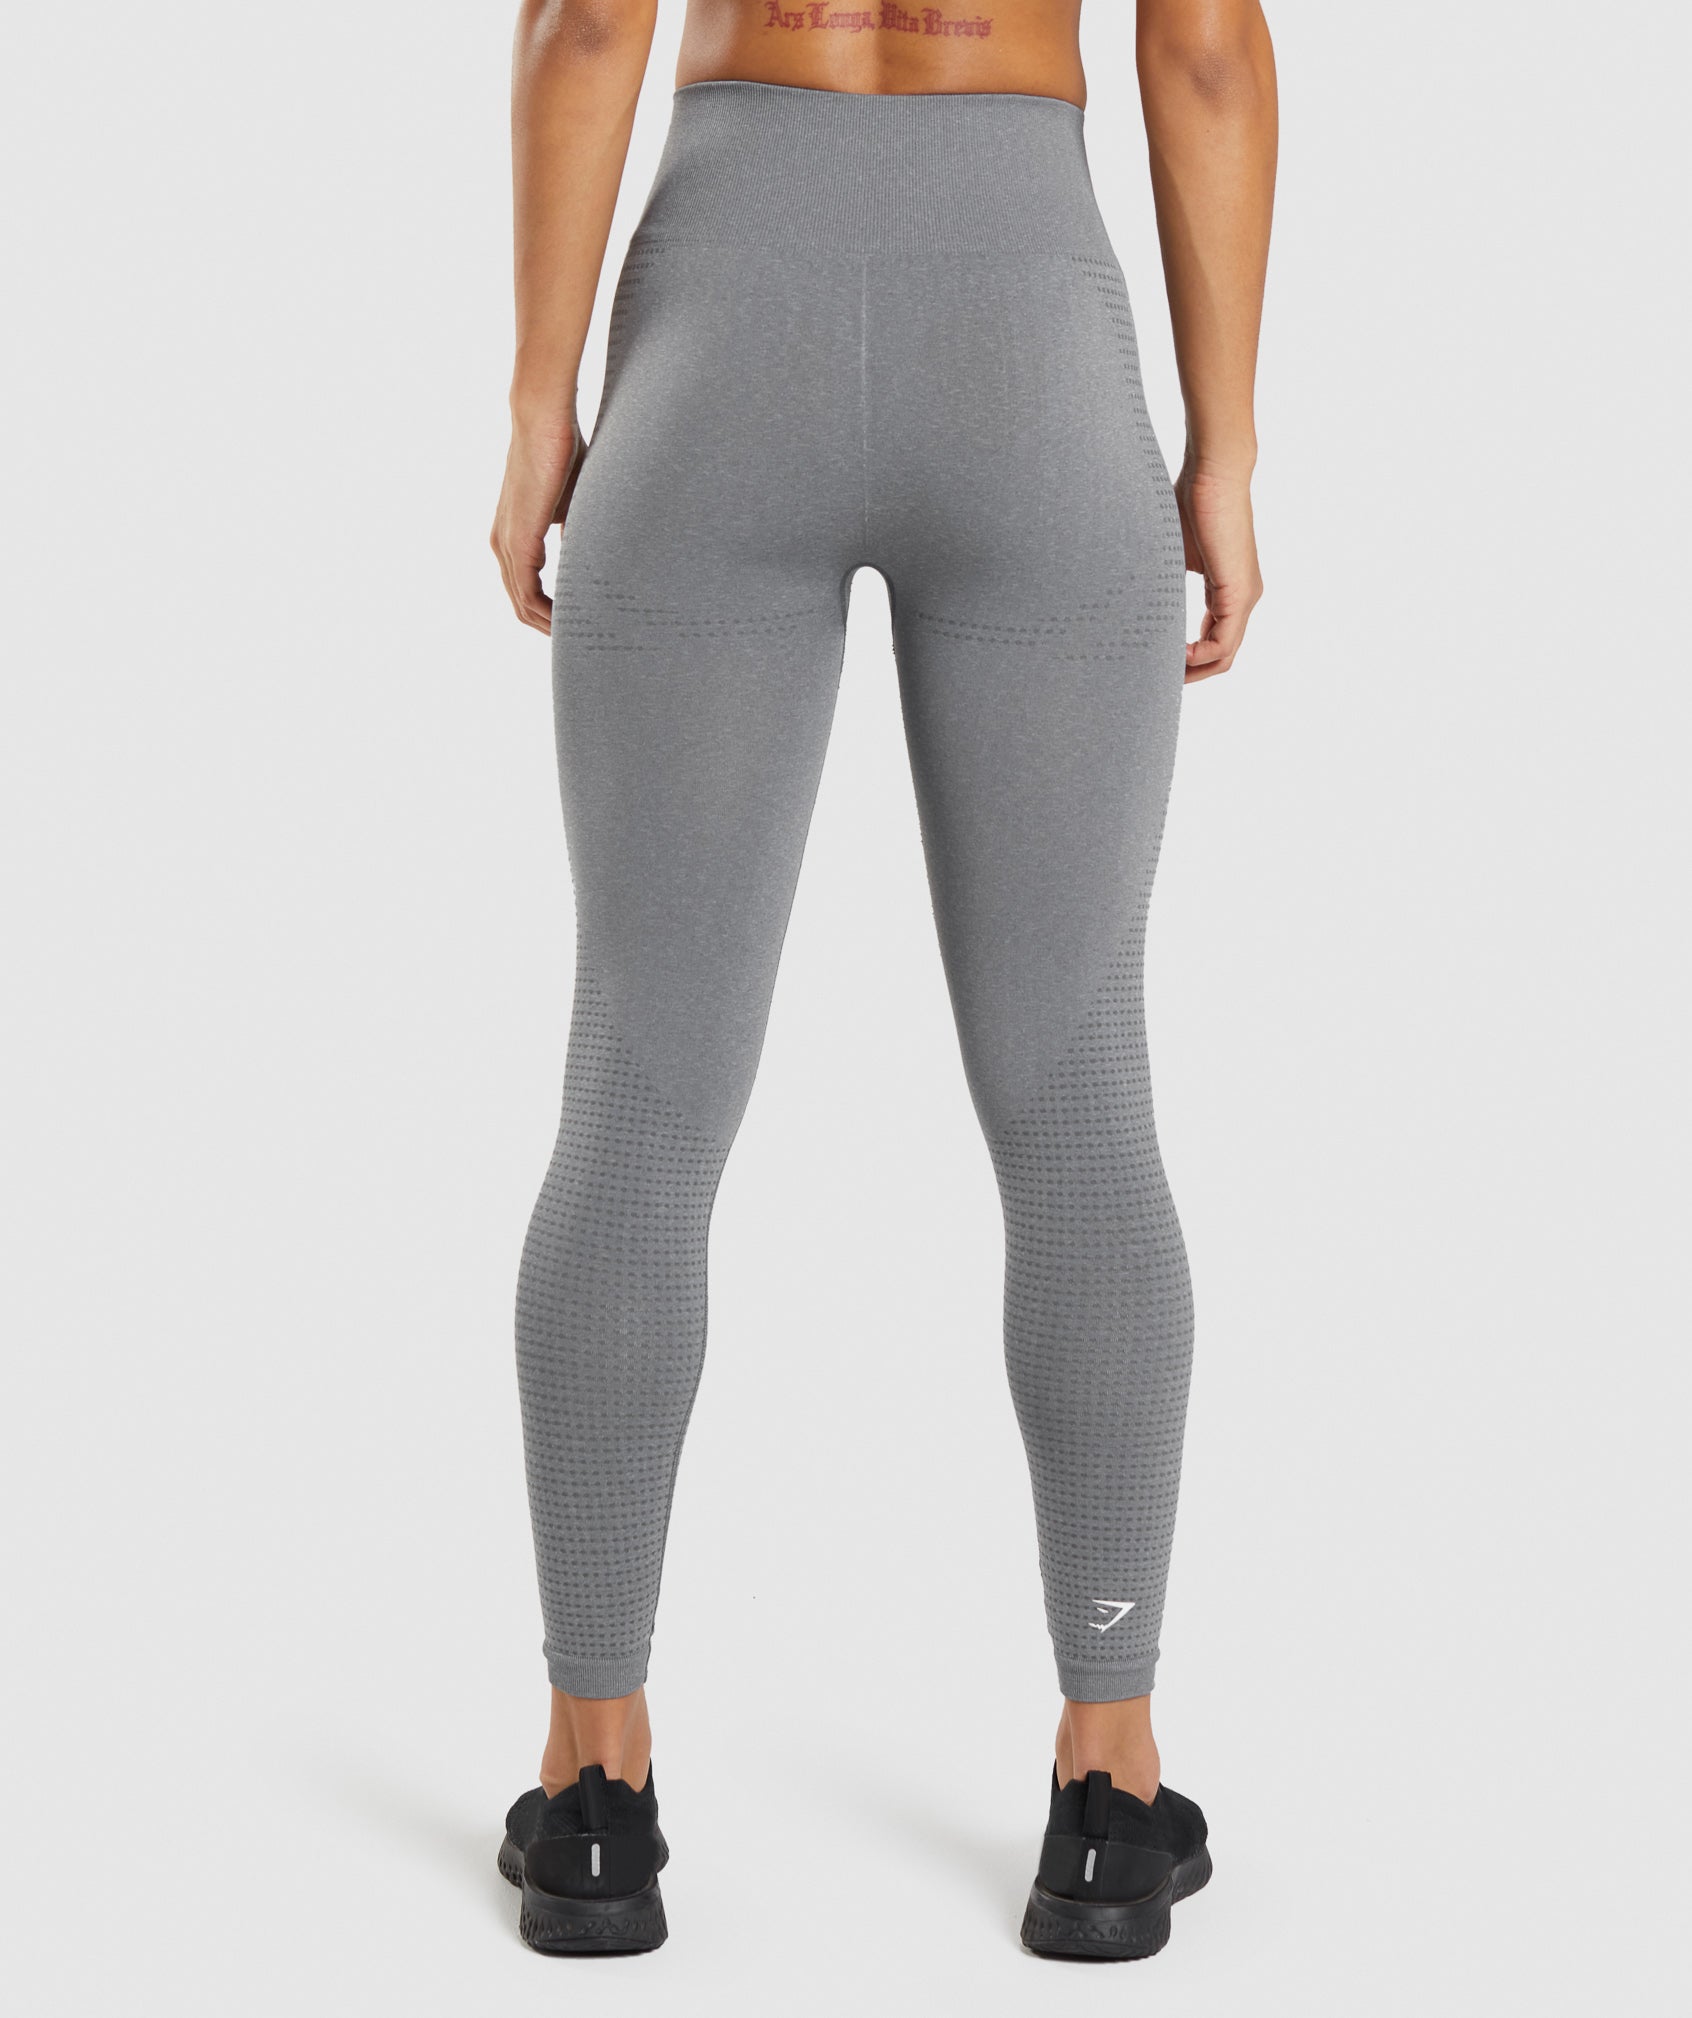 Gymshark - Gymshark tights / leggings on Designer Wardrobe